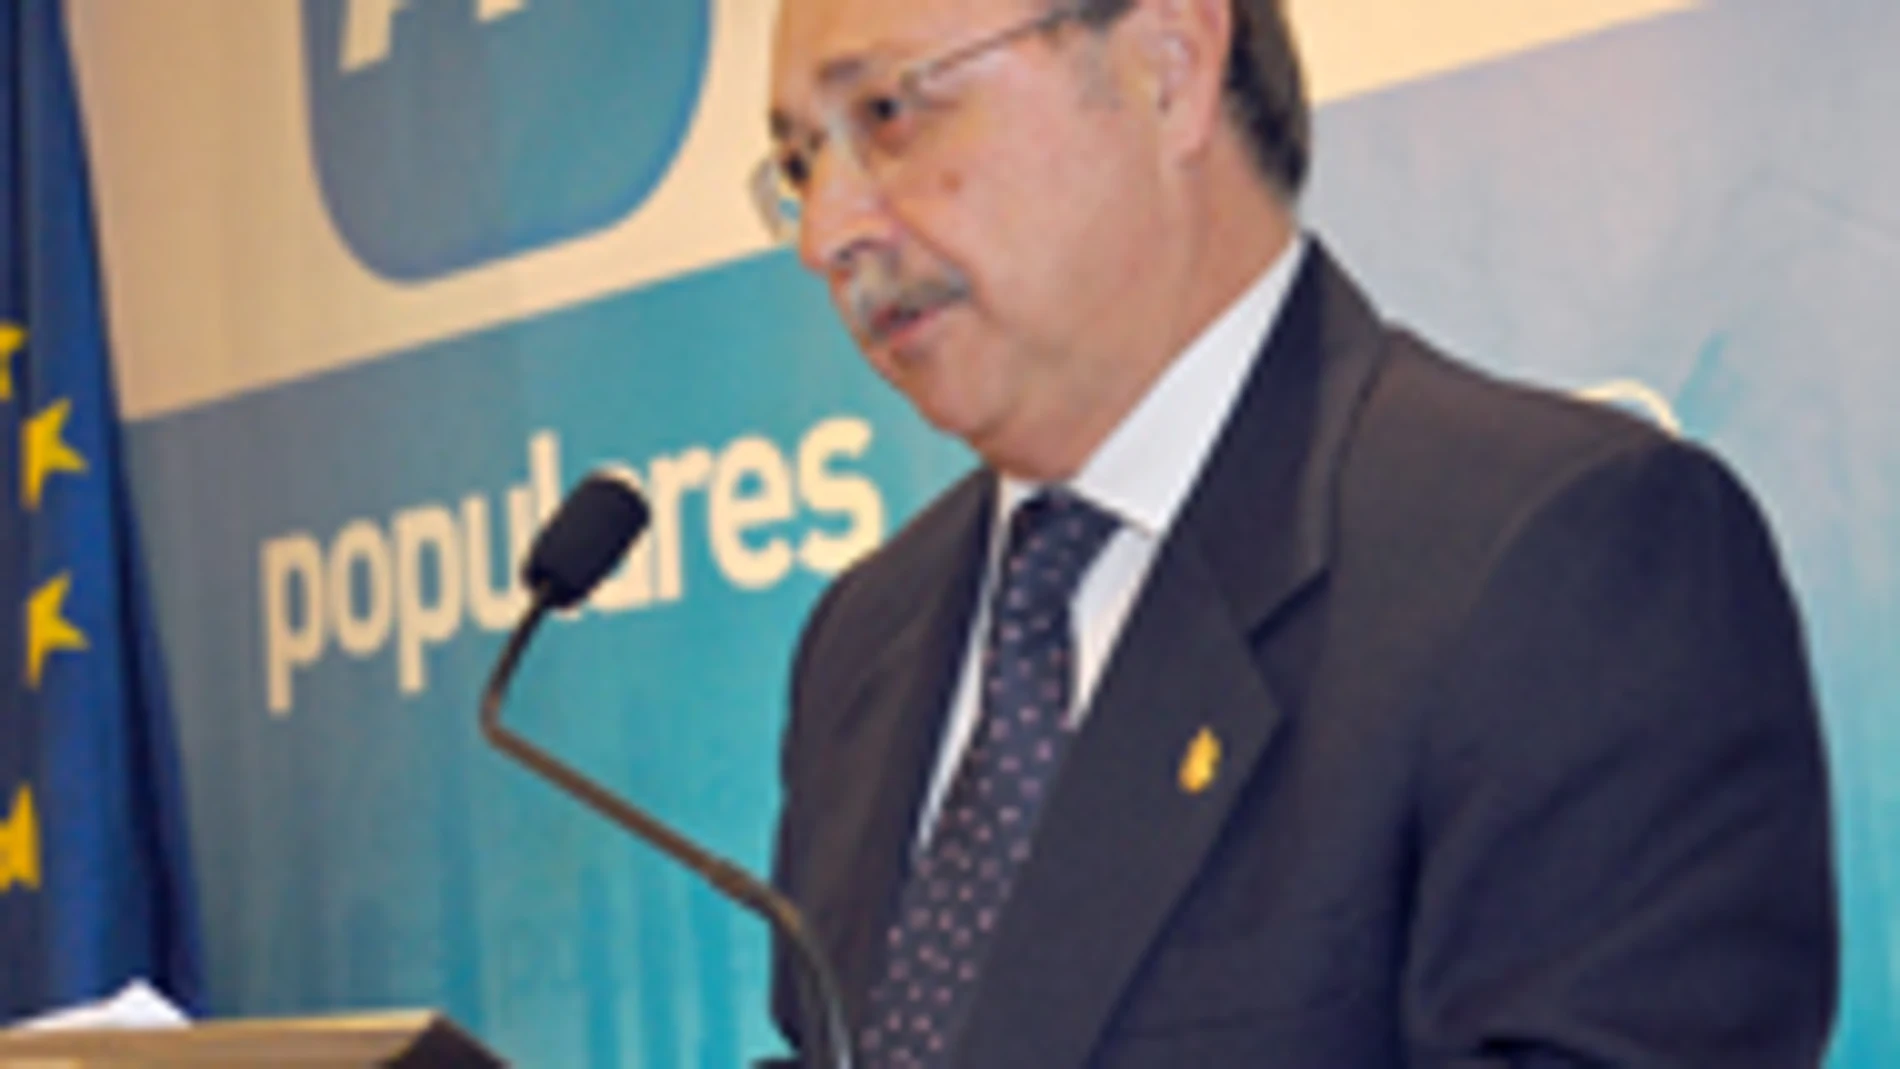 Juan Vivas, del PP de Ceuta